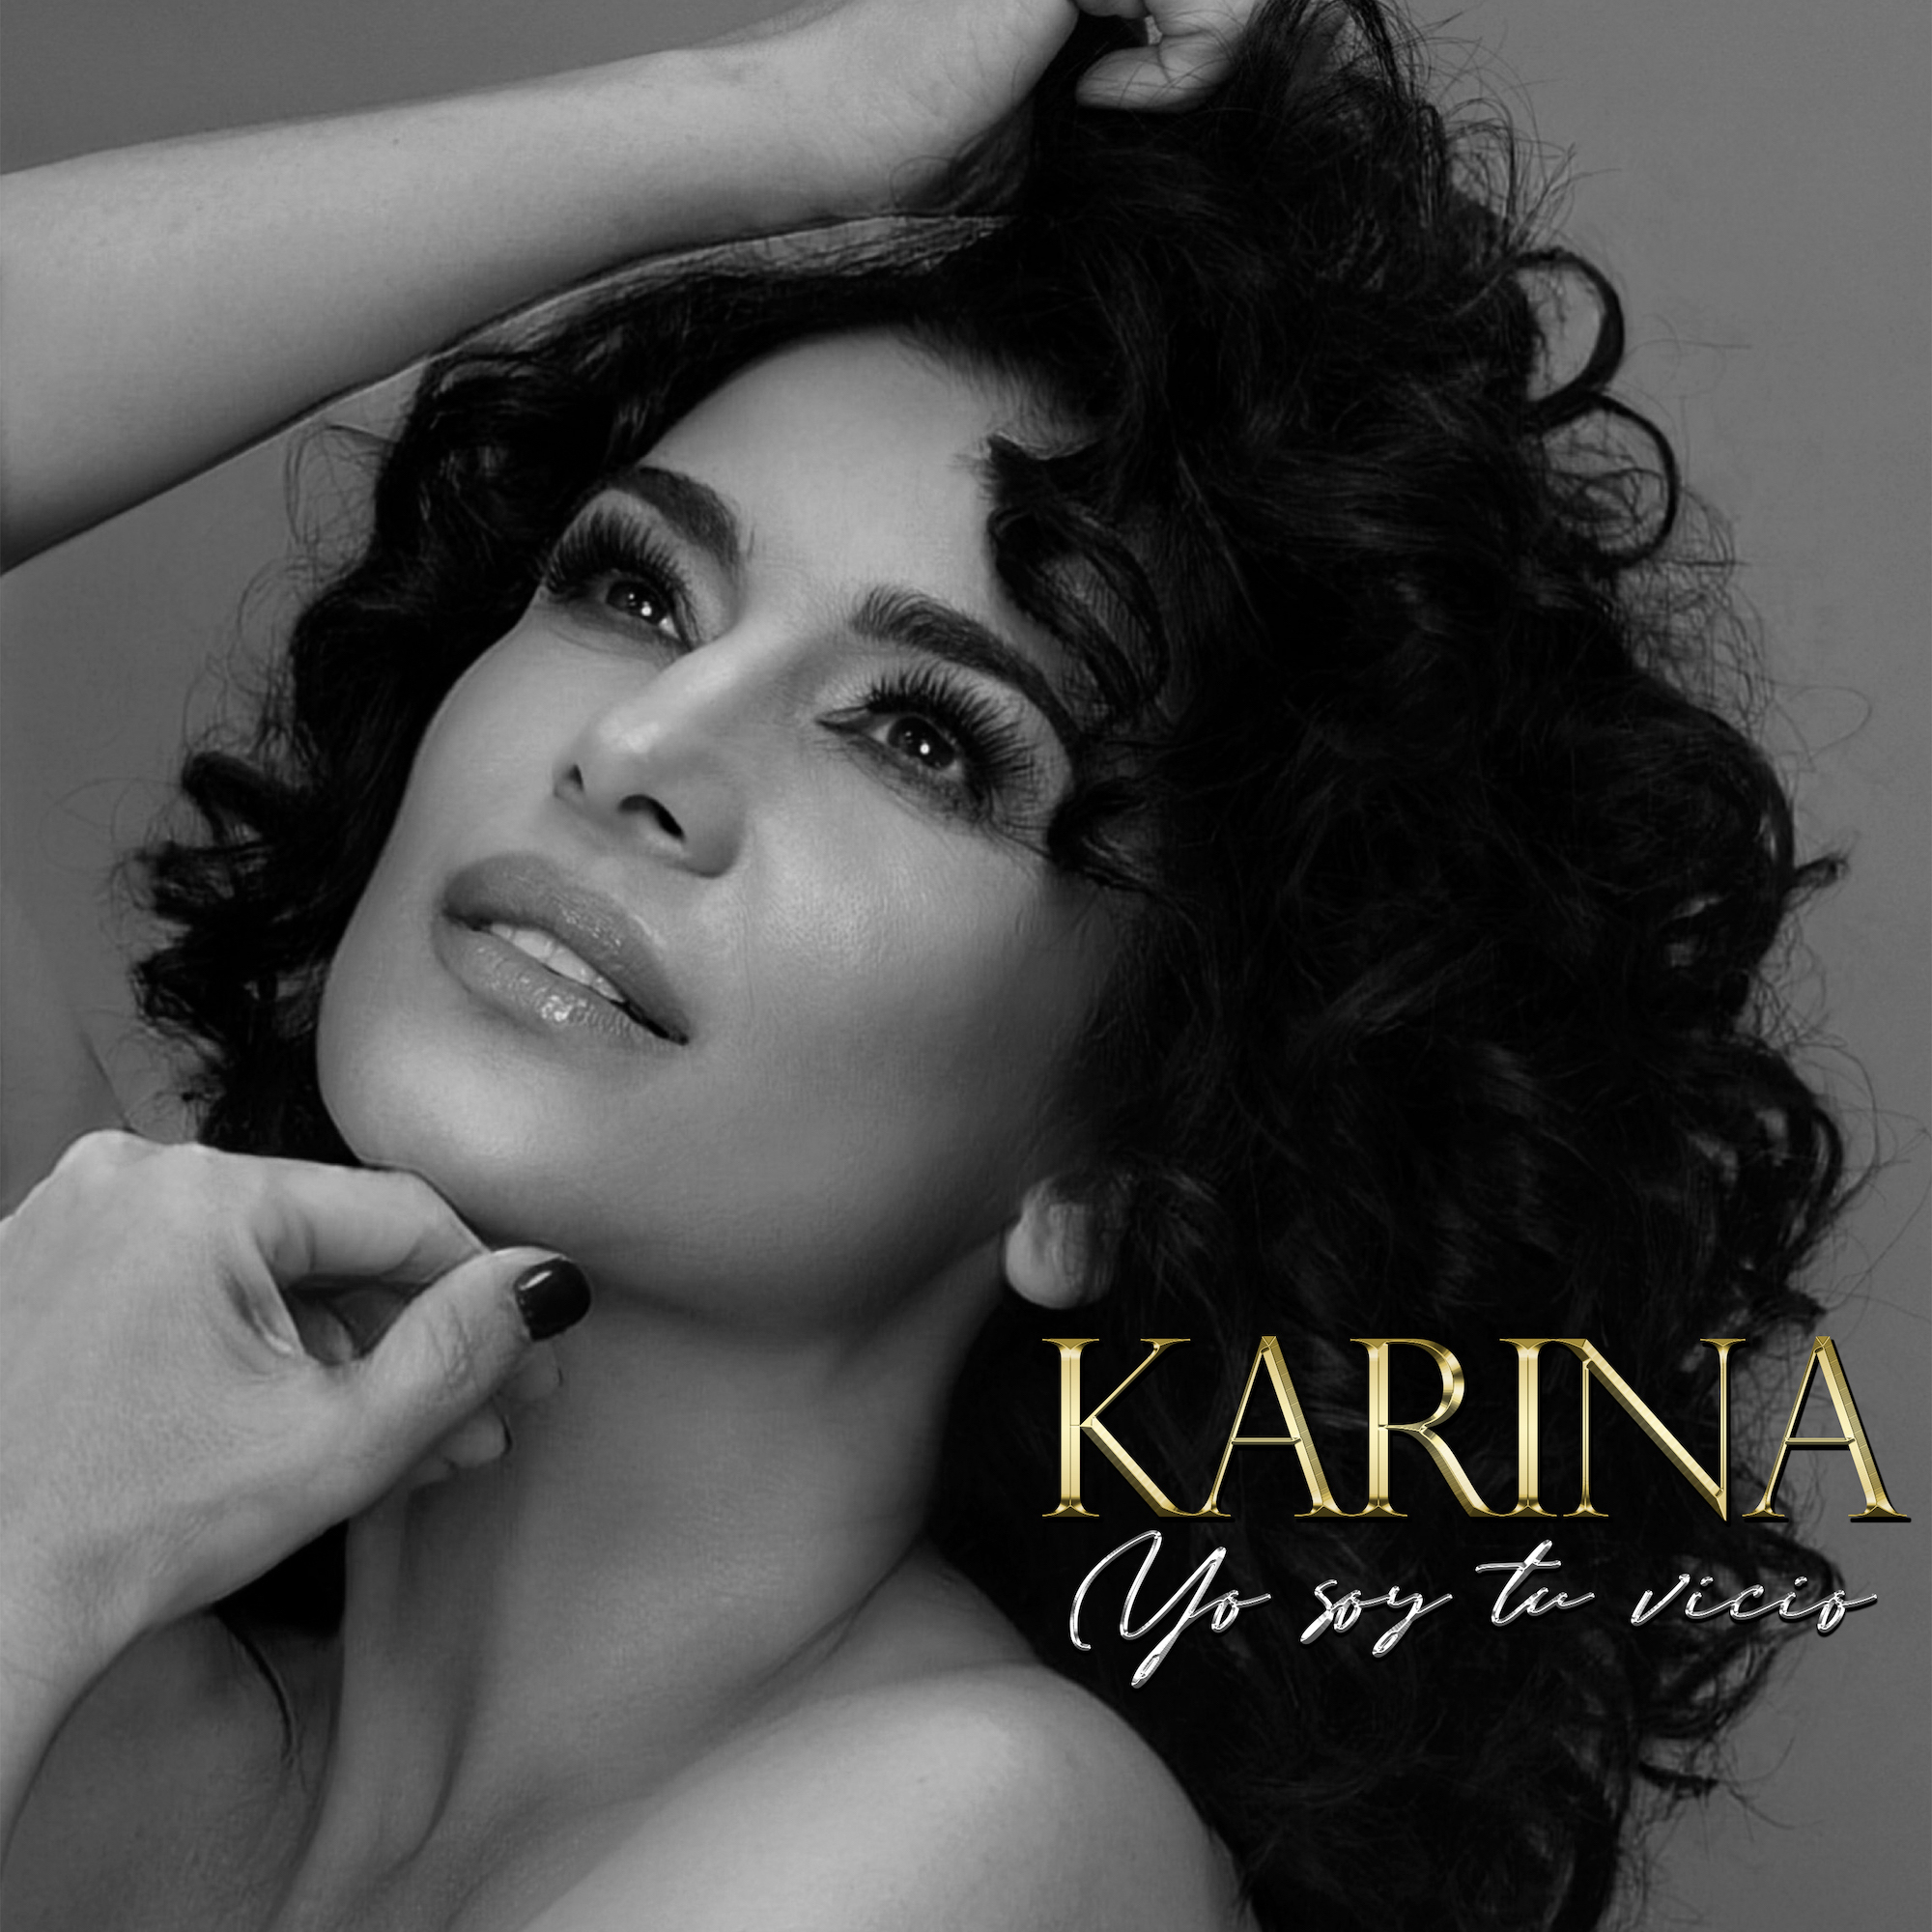 KARINA lanza nuevo sencillo “Yo Soy Tu Vicio”